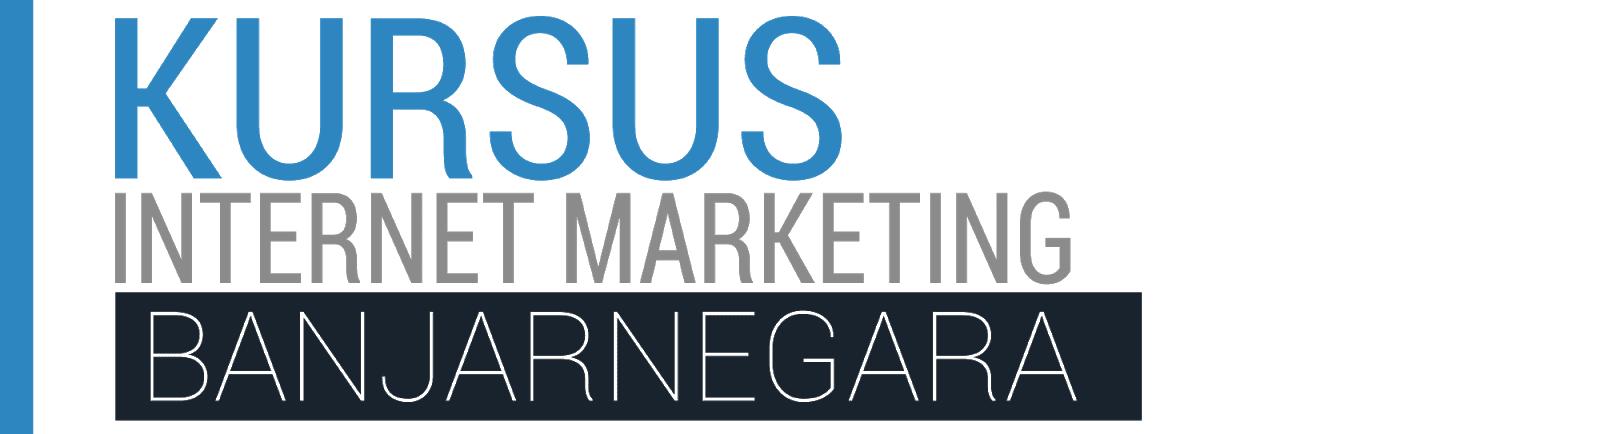 Kursus Internet Marketing Banjarnegara | 0852-2792-0000